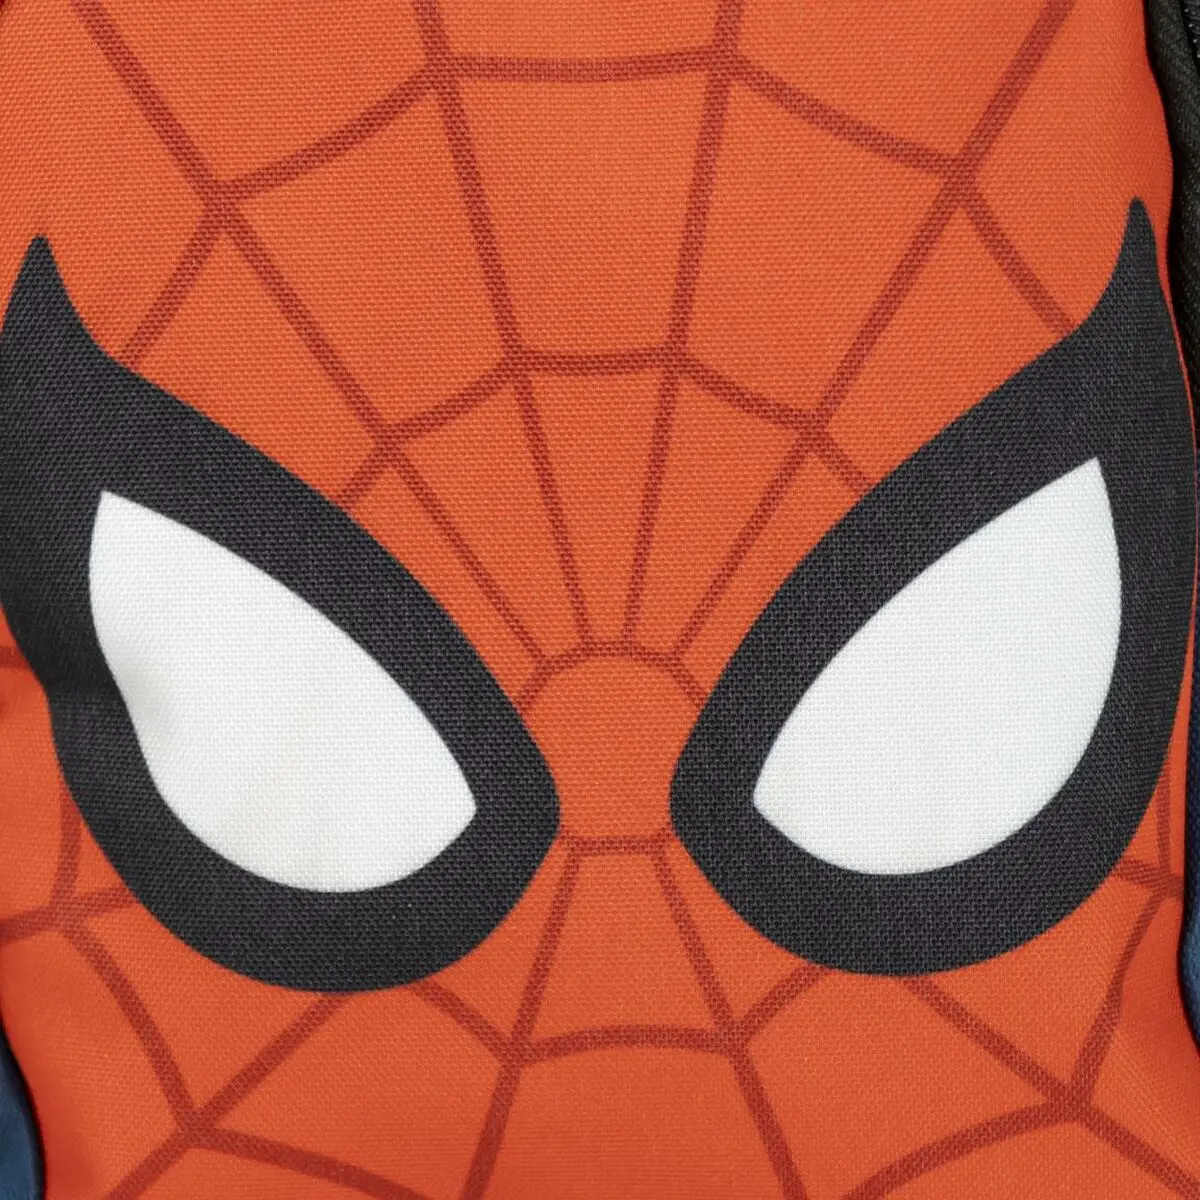 Zaino per Bambini Spider-Man Borsa a Tracolla Azzurro Rosso 13 x 23 x 7 cm